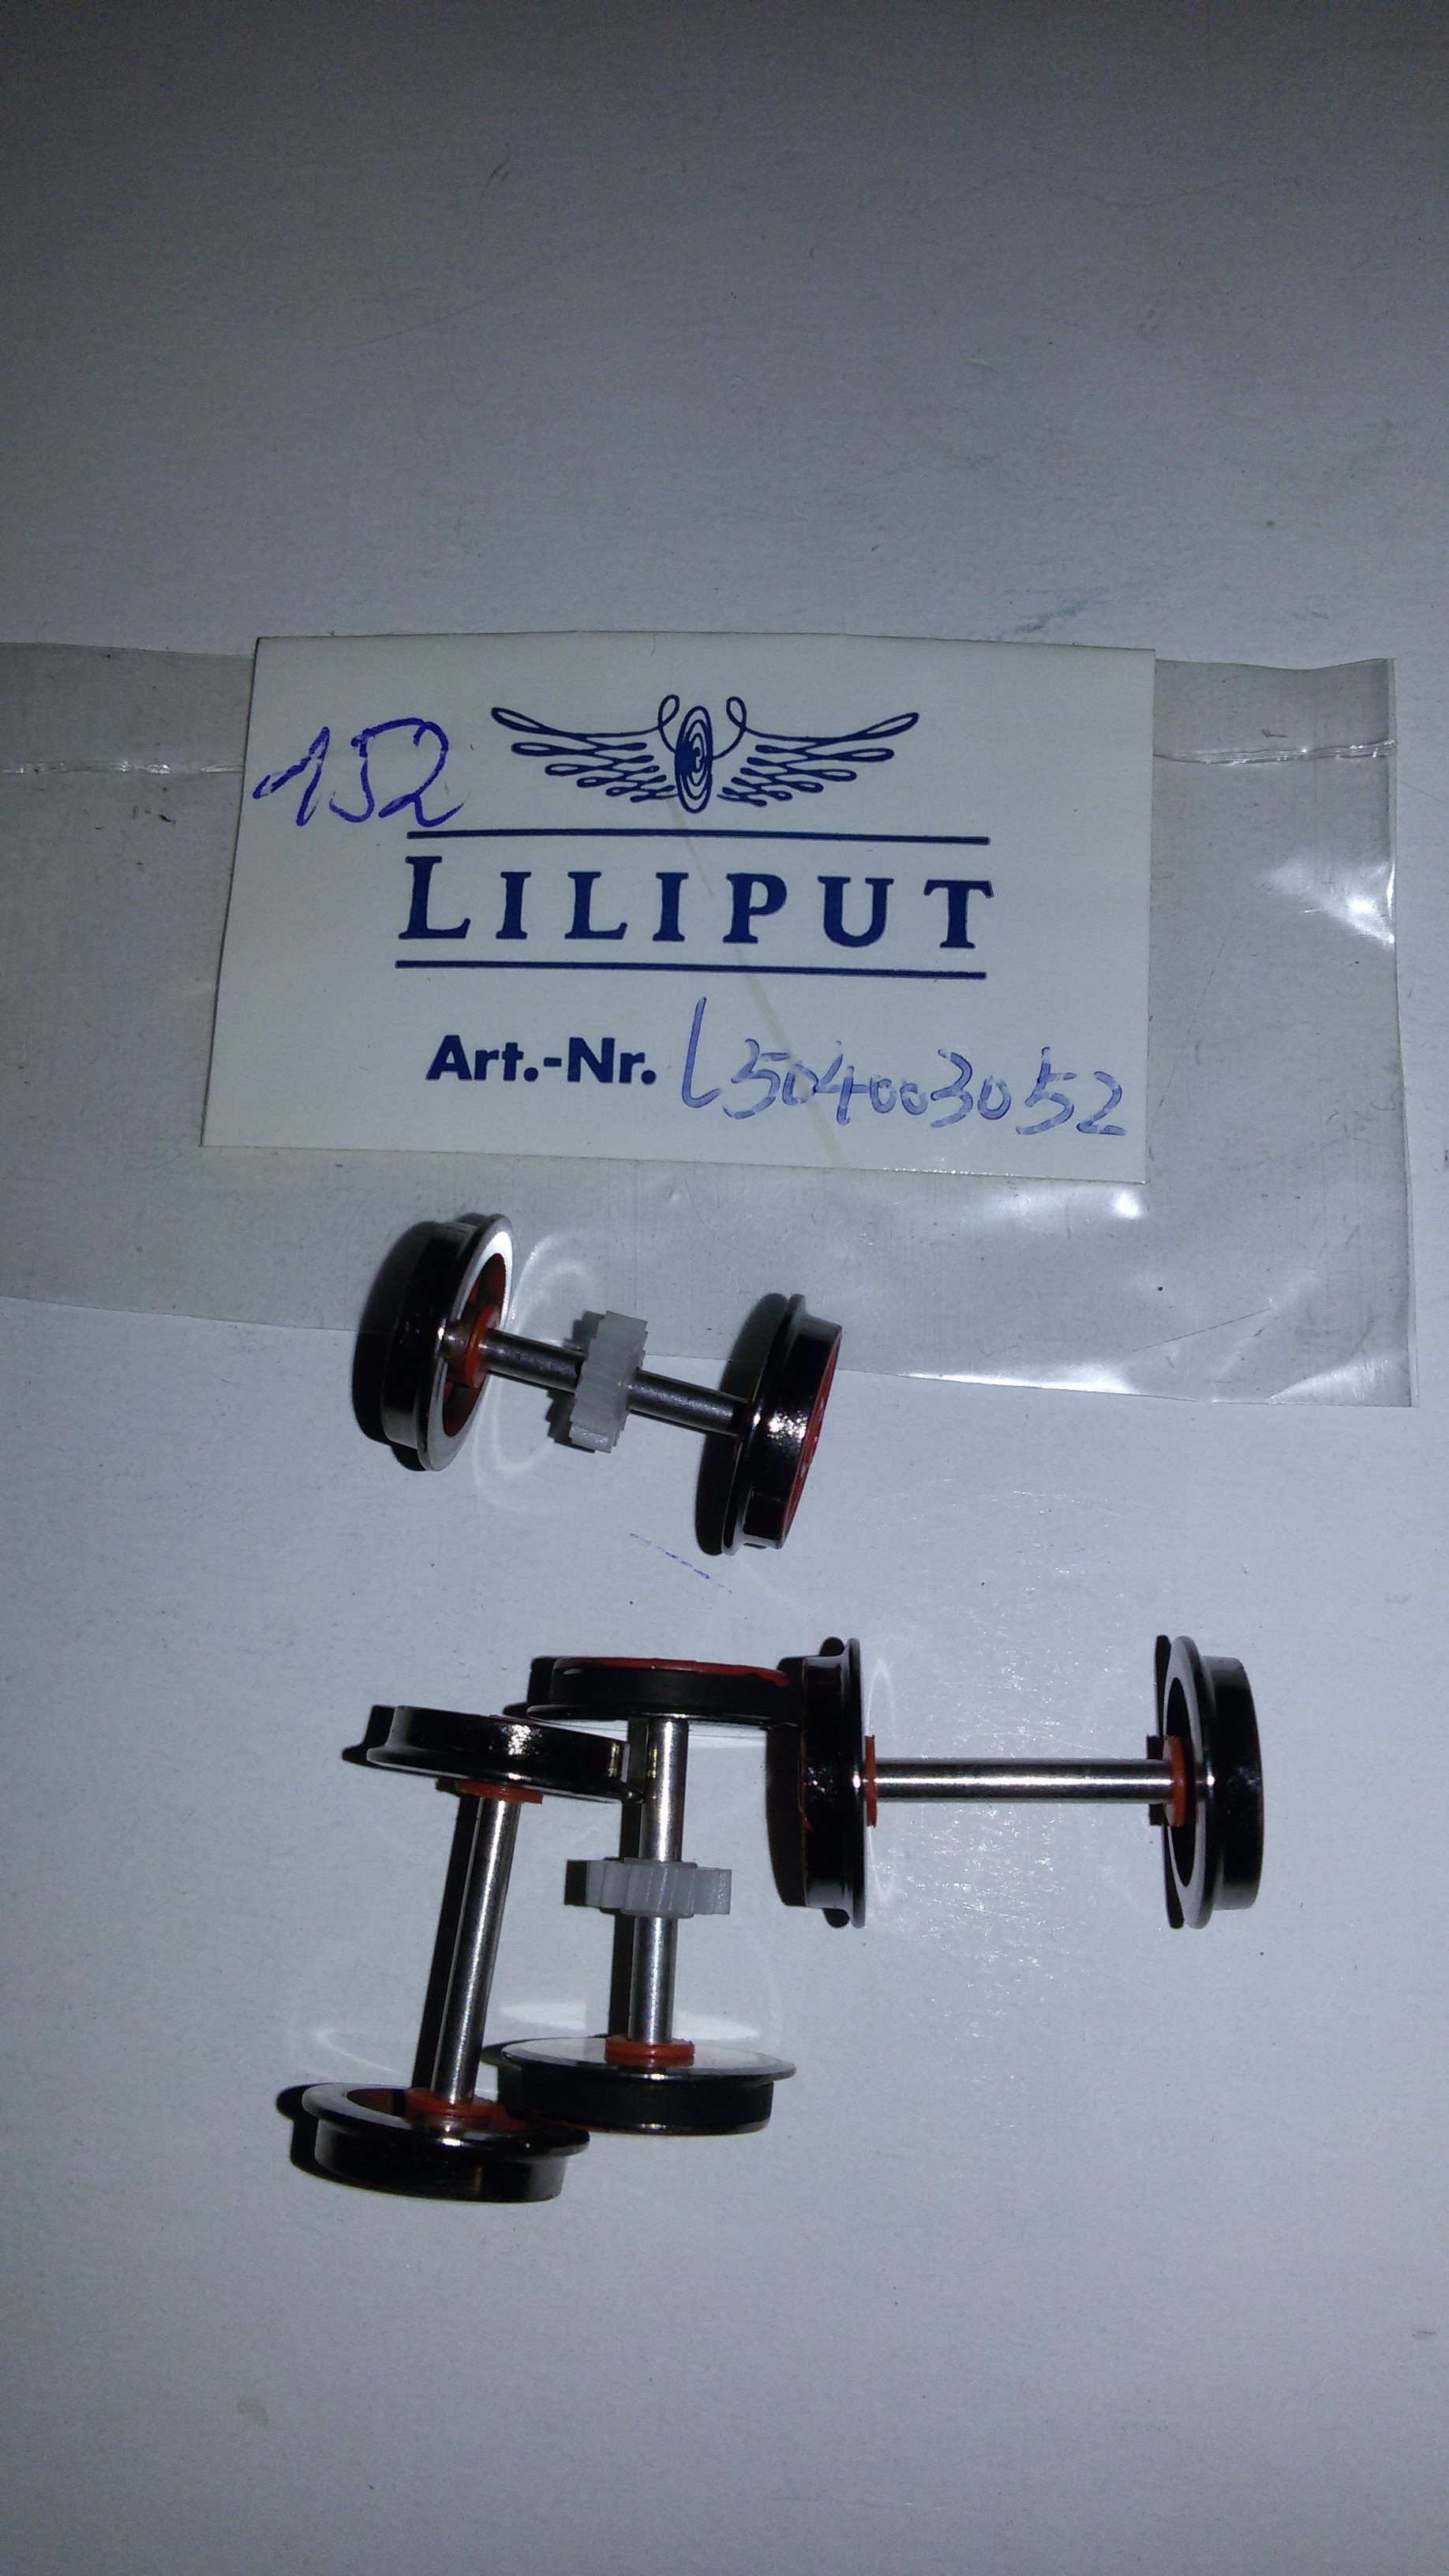 *LO 152* Liliput Ersatzteil L50400305.2 Radsatz 4 Stck